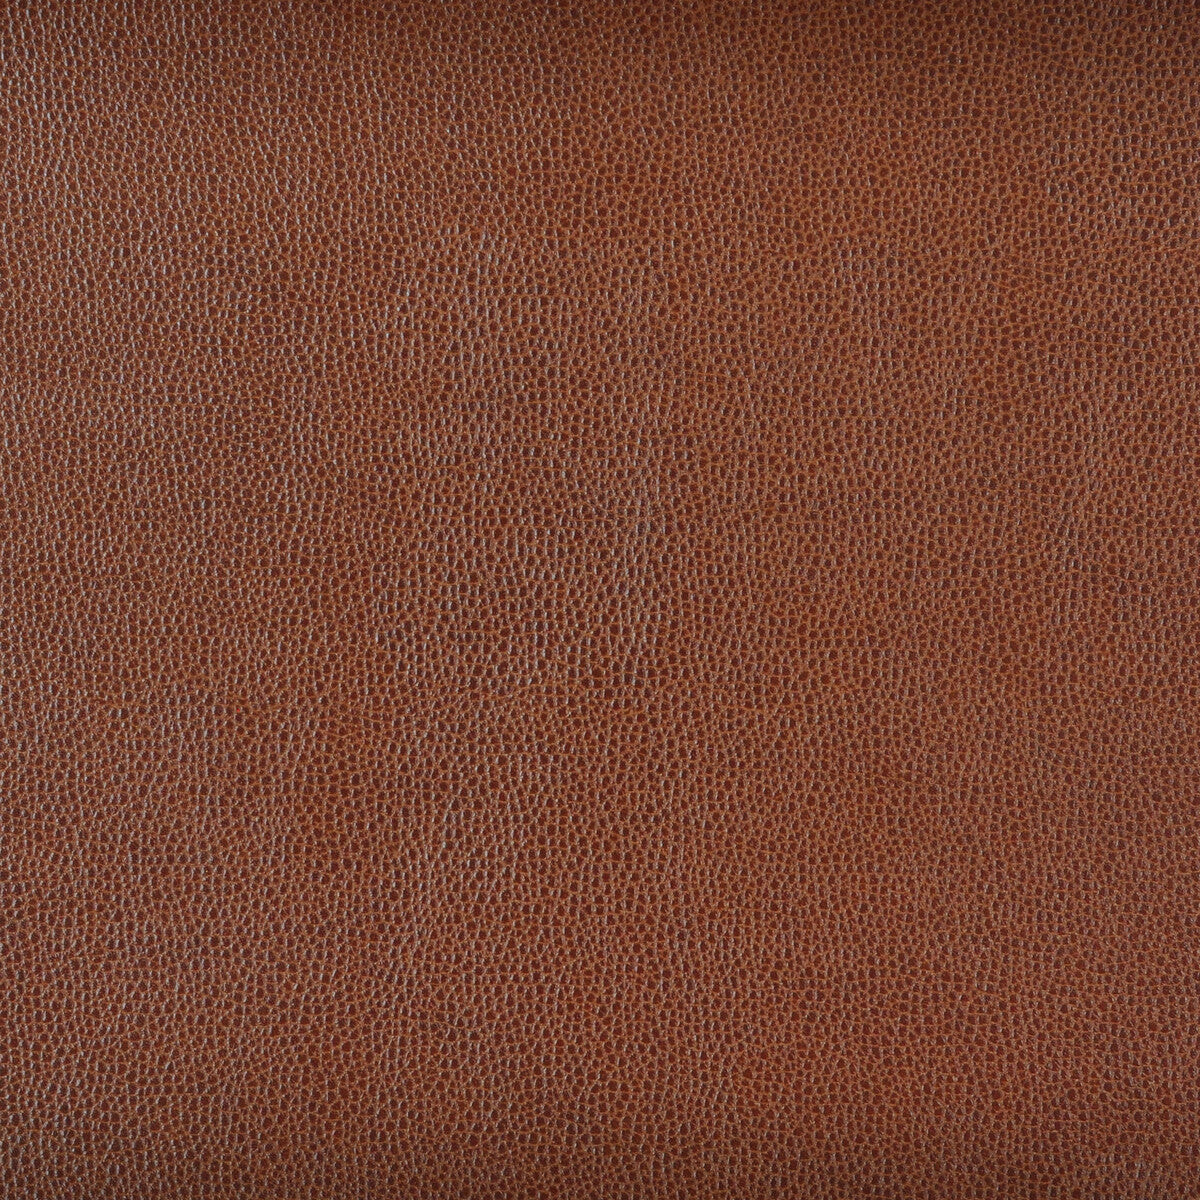 Kravet Design fabric in sparta-6 color - pattern SPARTA.6.0 - by Kravet Design